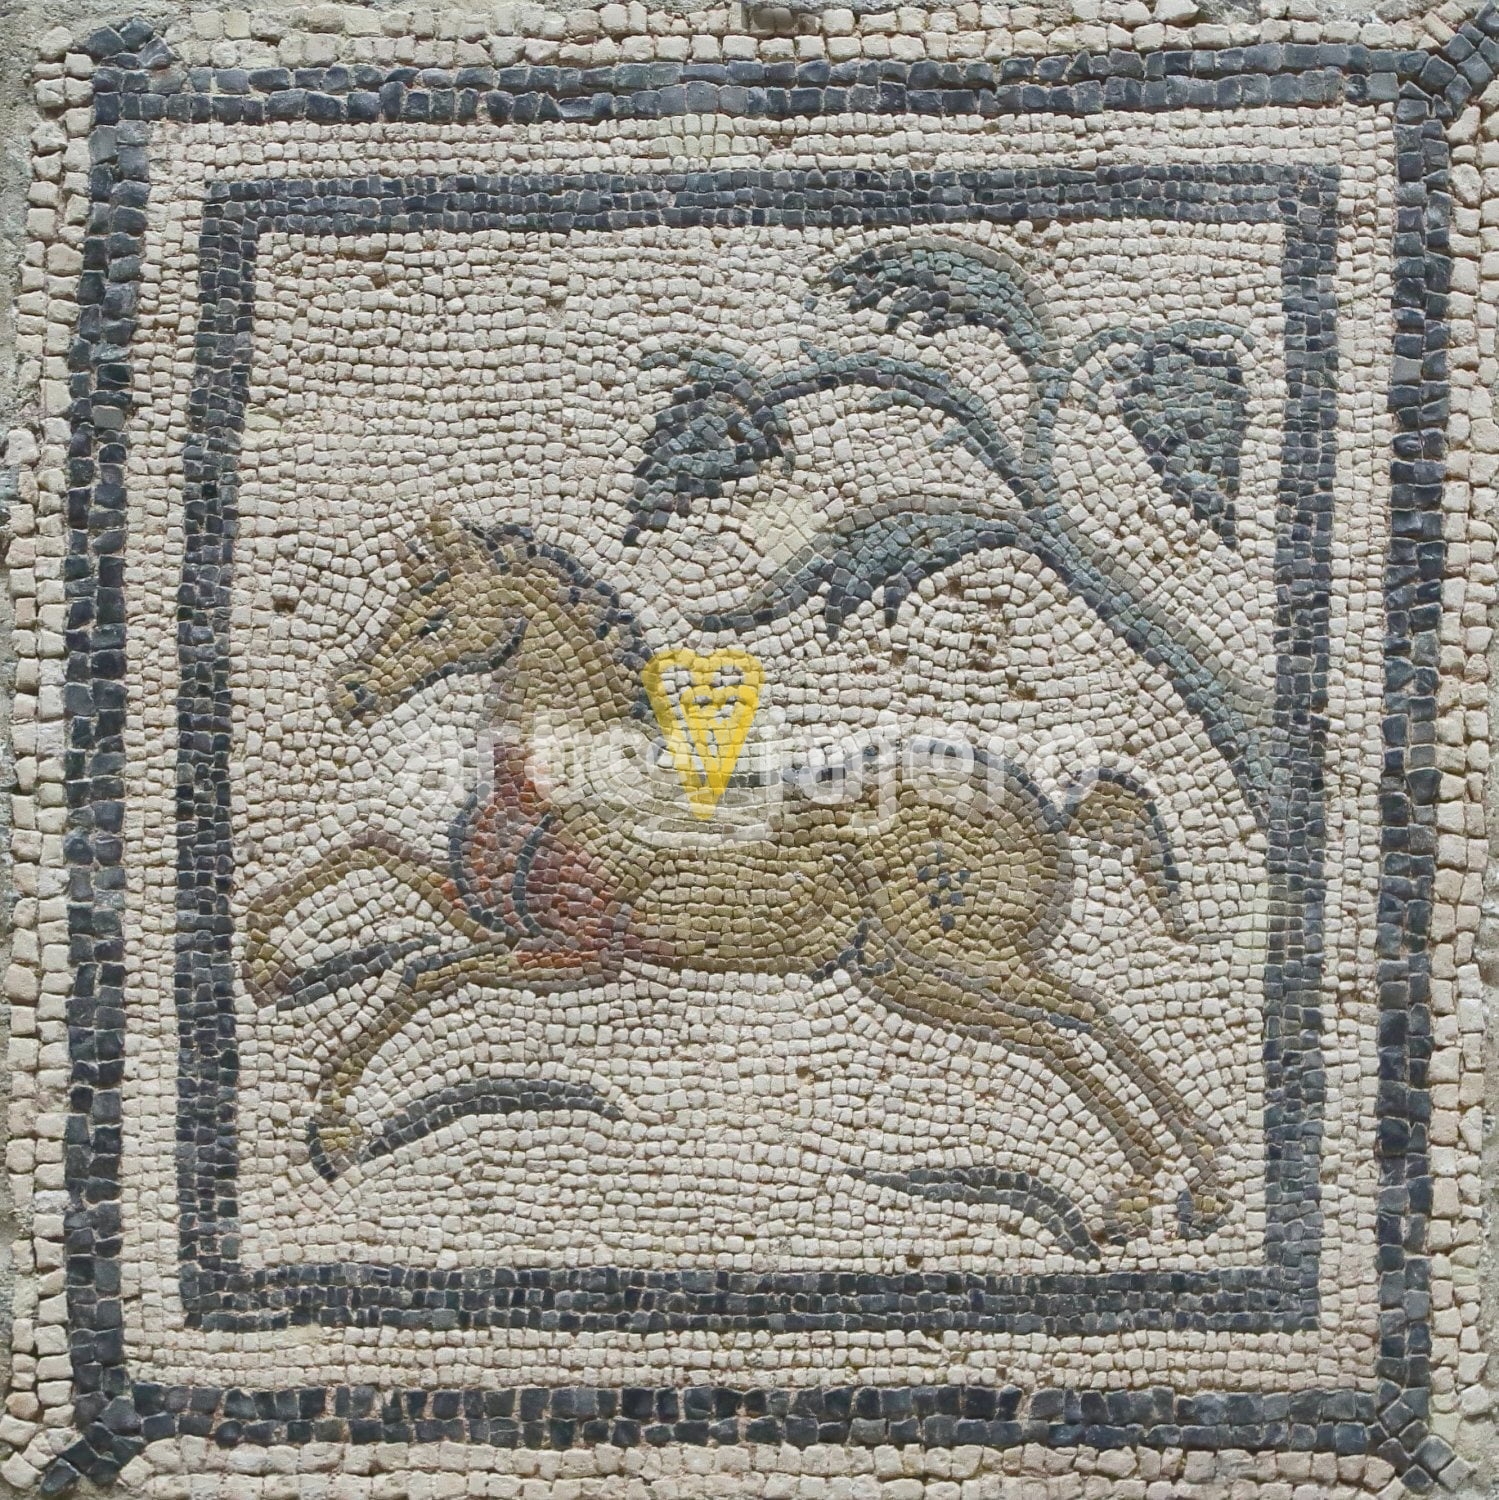 mosaico romano con calendario agrícola